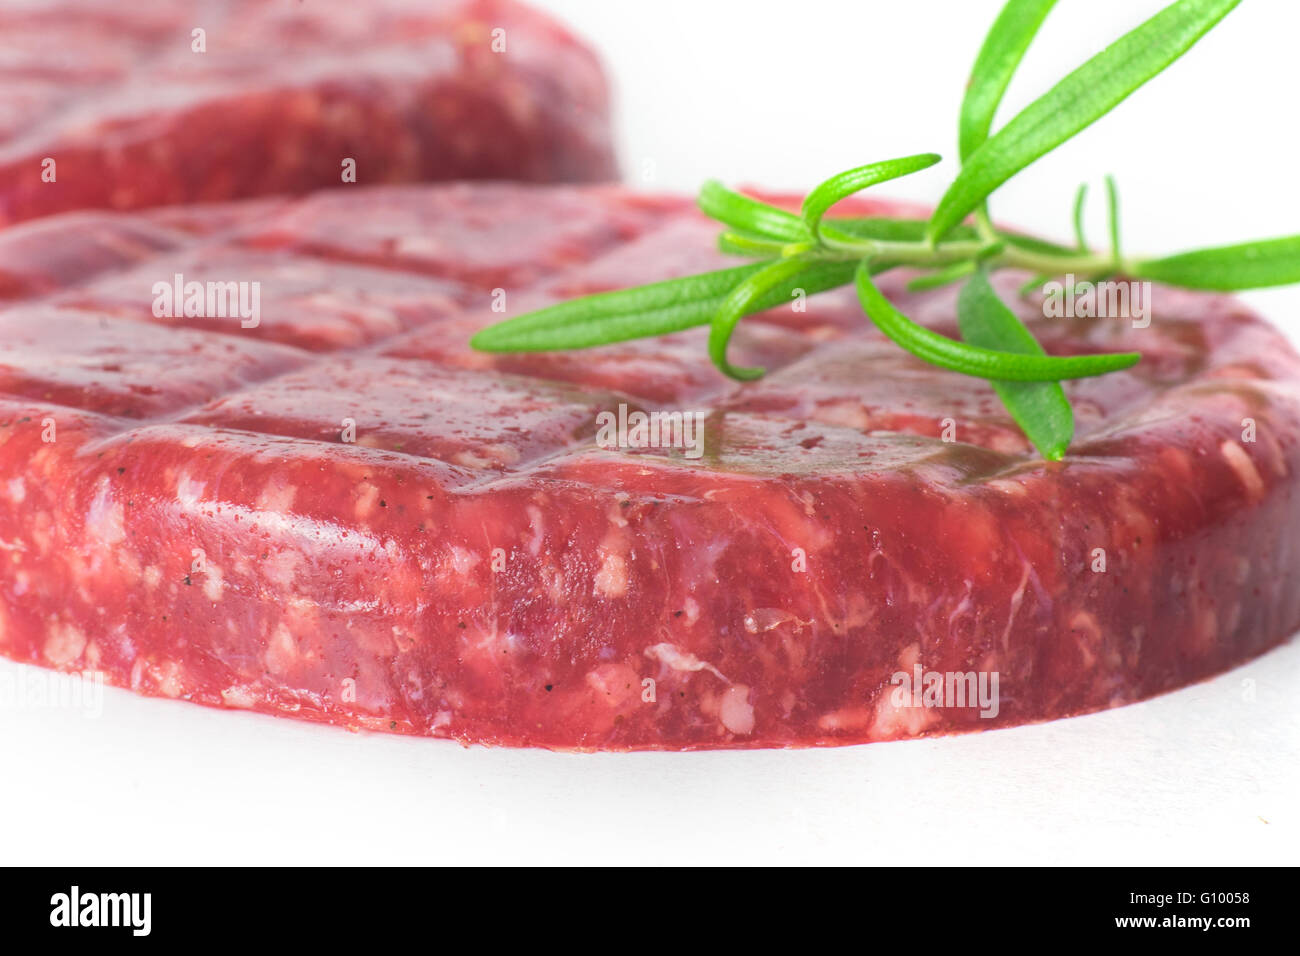 Raw beef hamburger isolated on white background Stock Photo